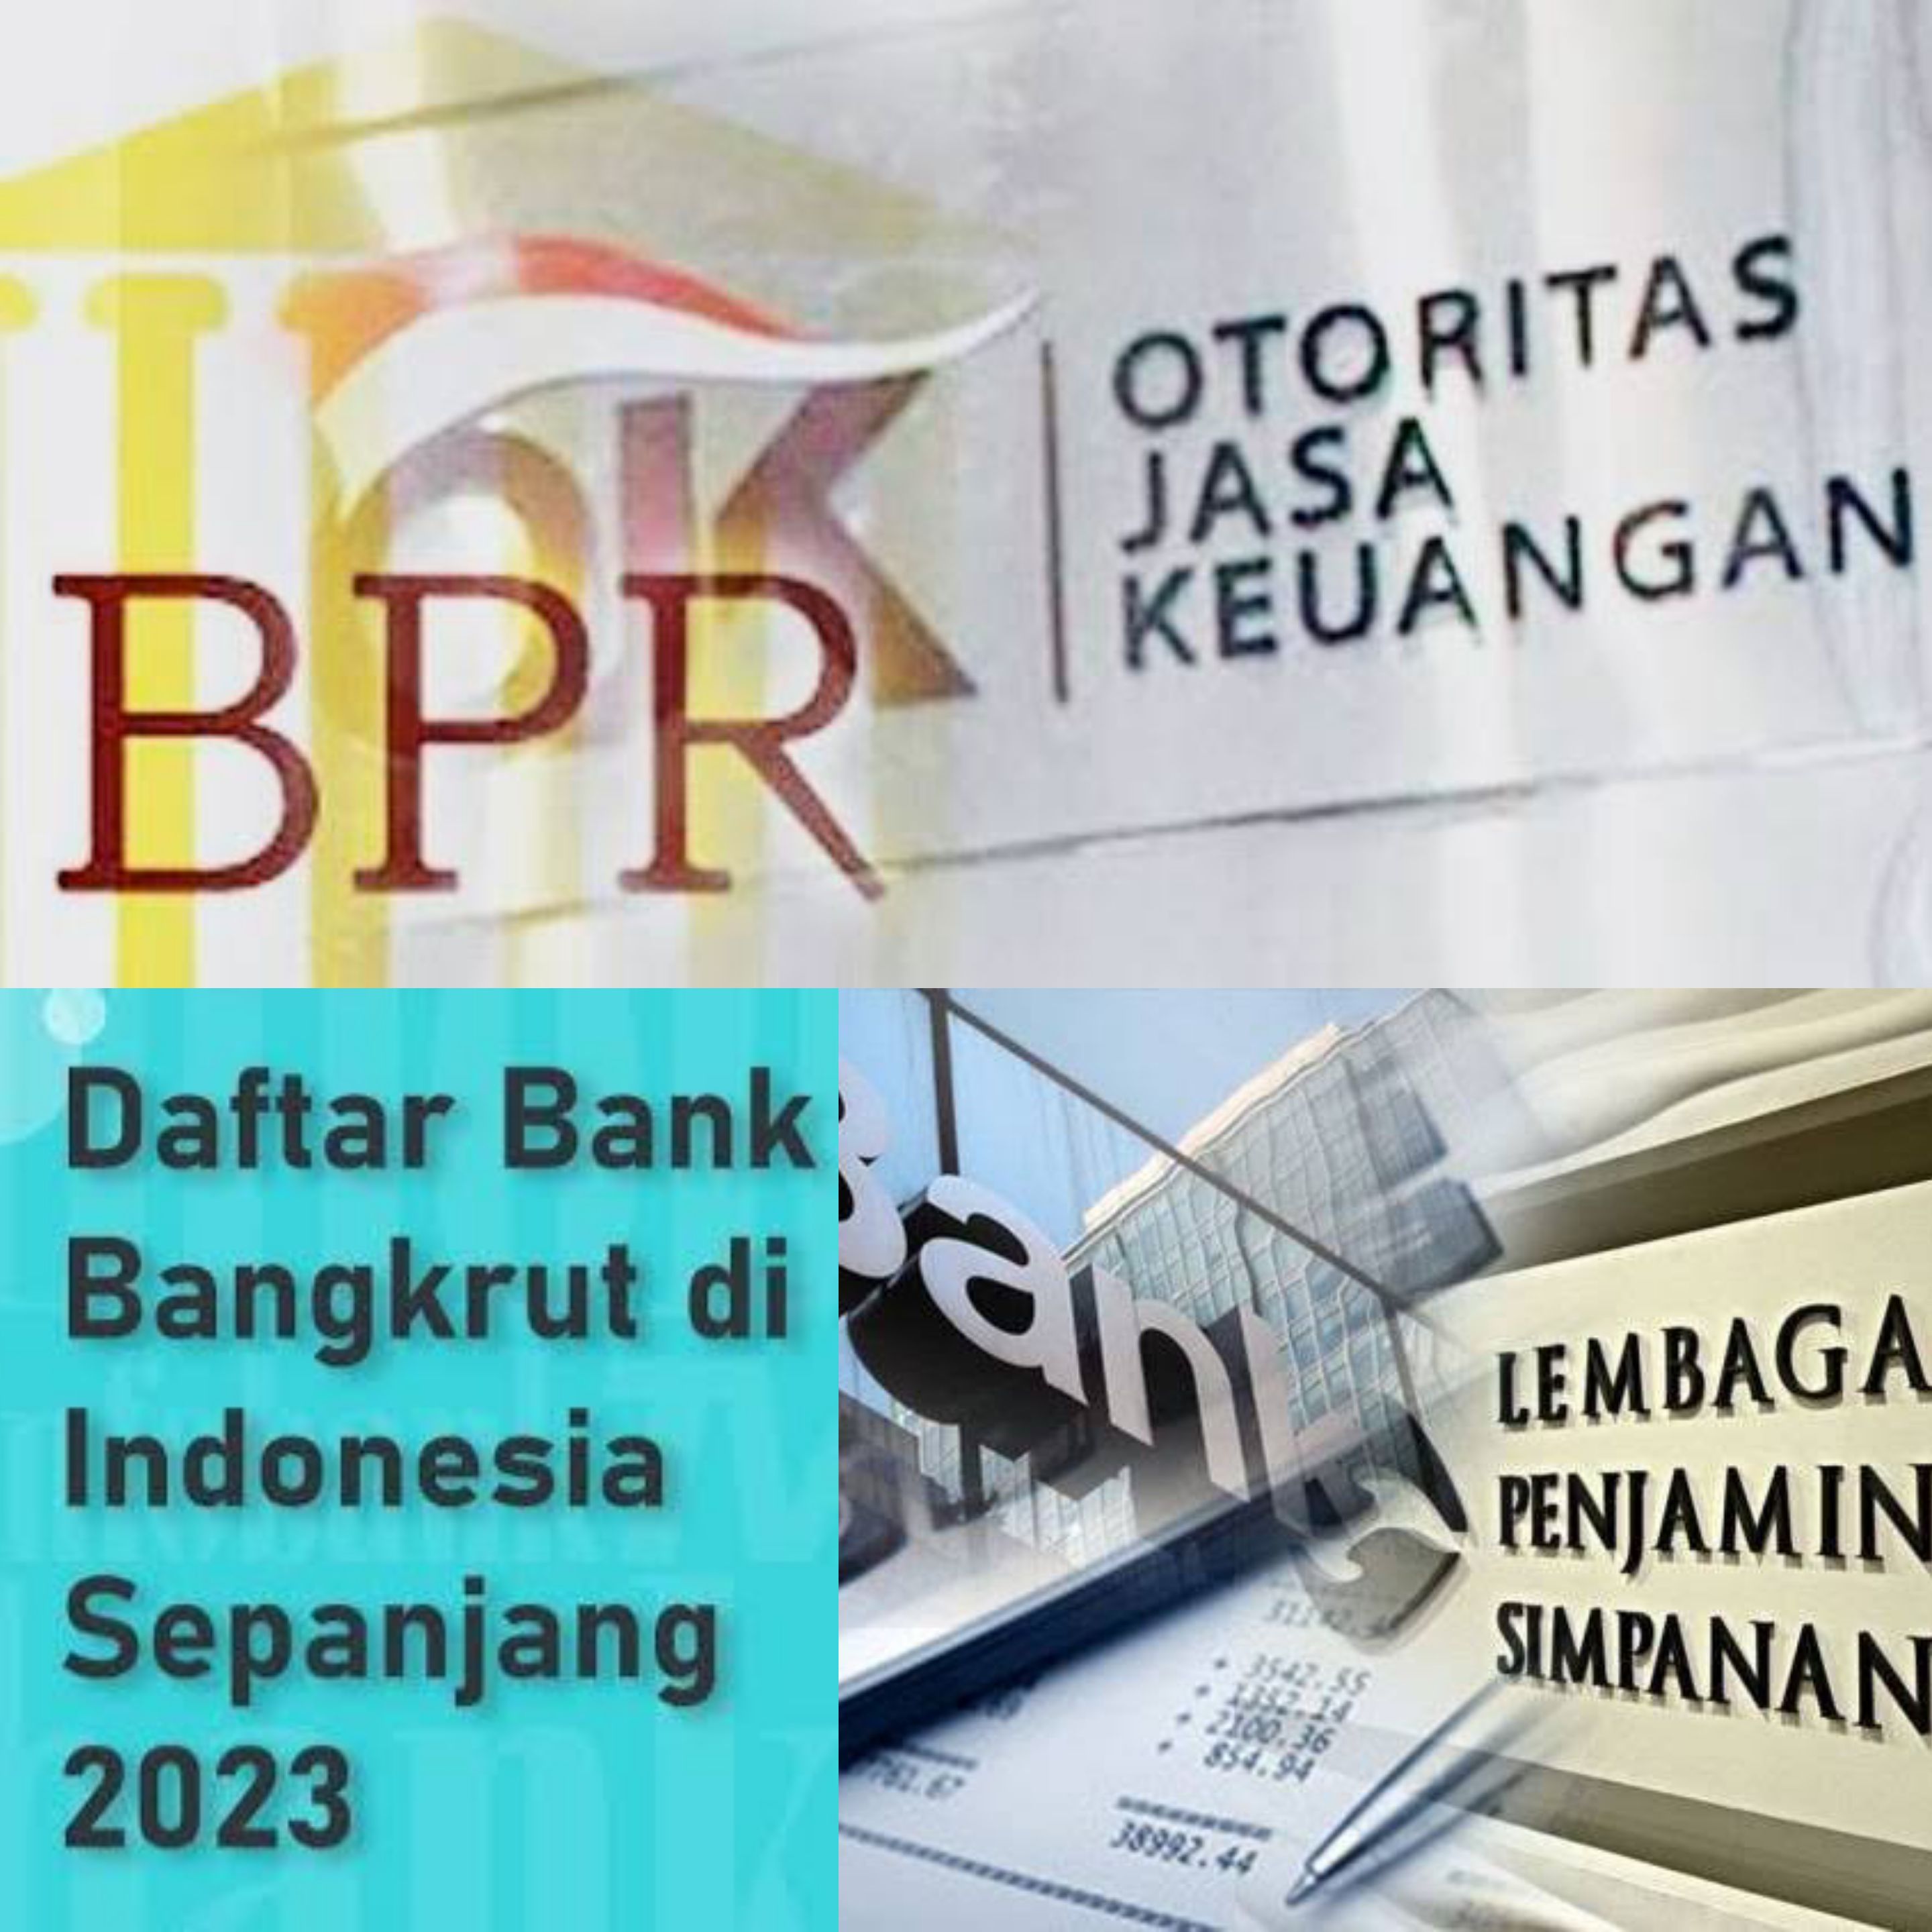 Gulung Tikar! Nama dan Profile Bank Bangkrut Sepanjang 2023. Ini Daftarnya